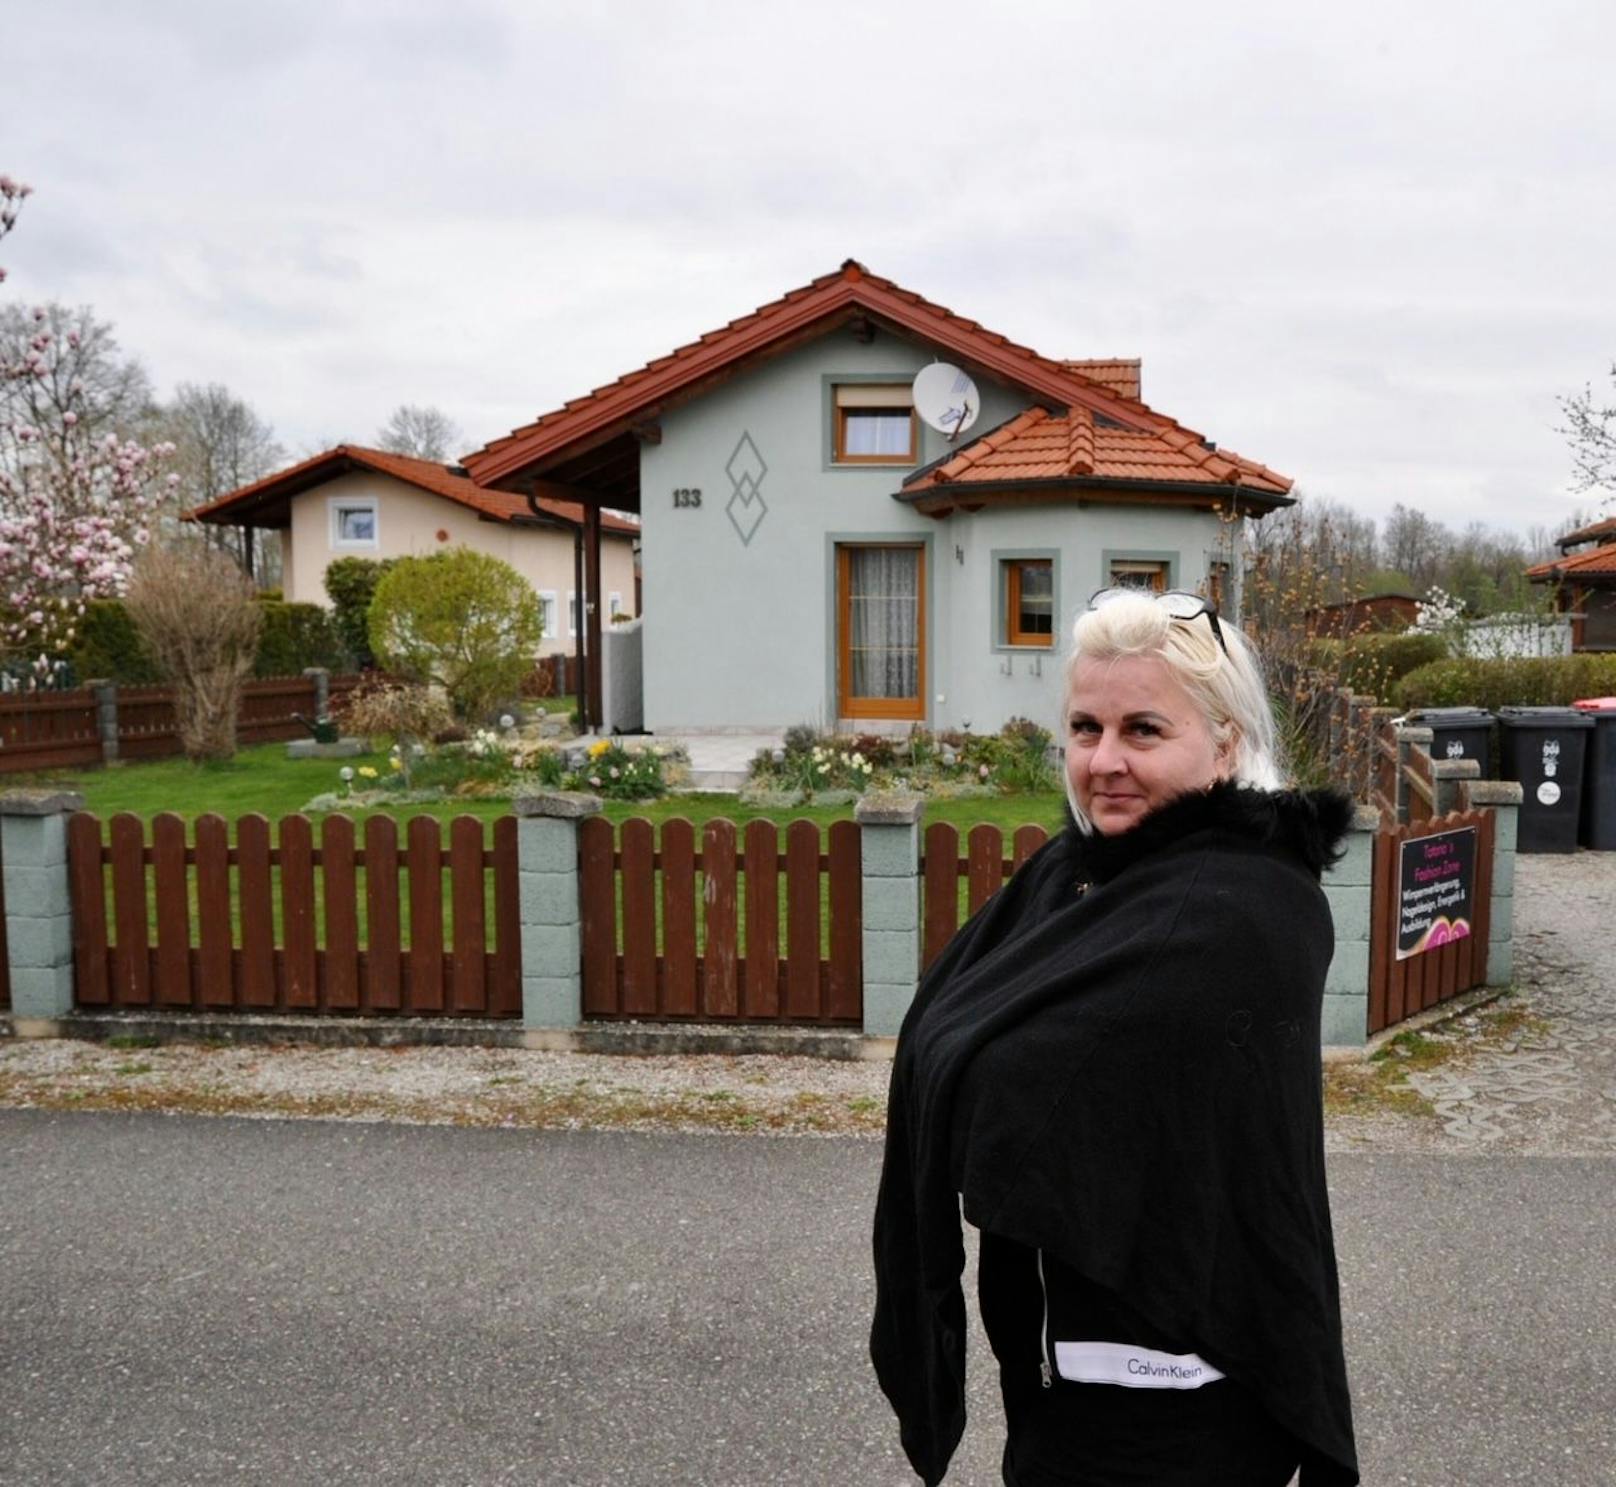 200.000 € reingesteckt – "Meinem Haus droht der Abriss"